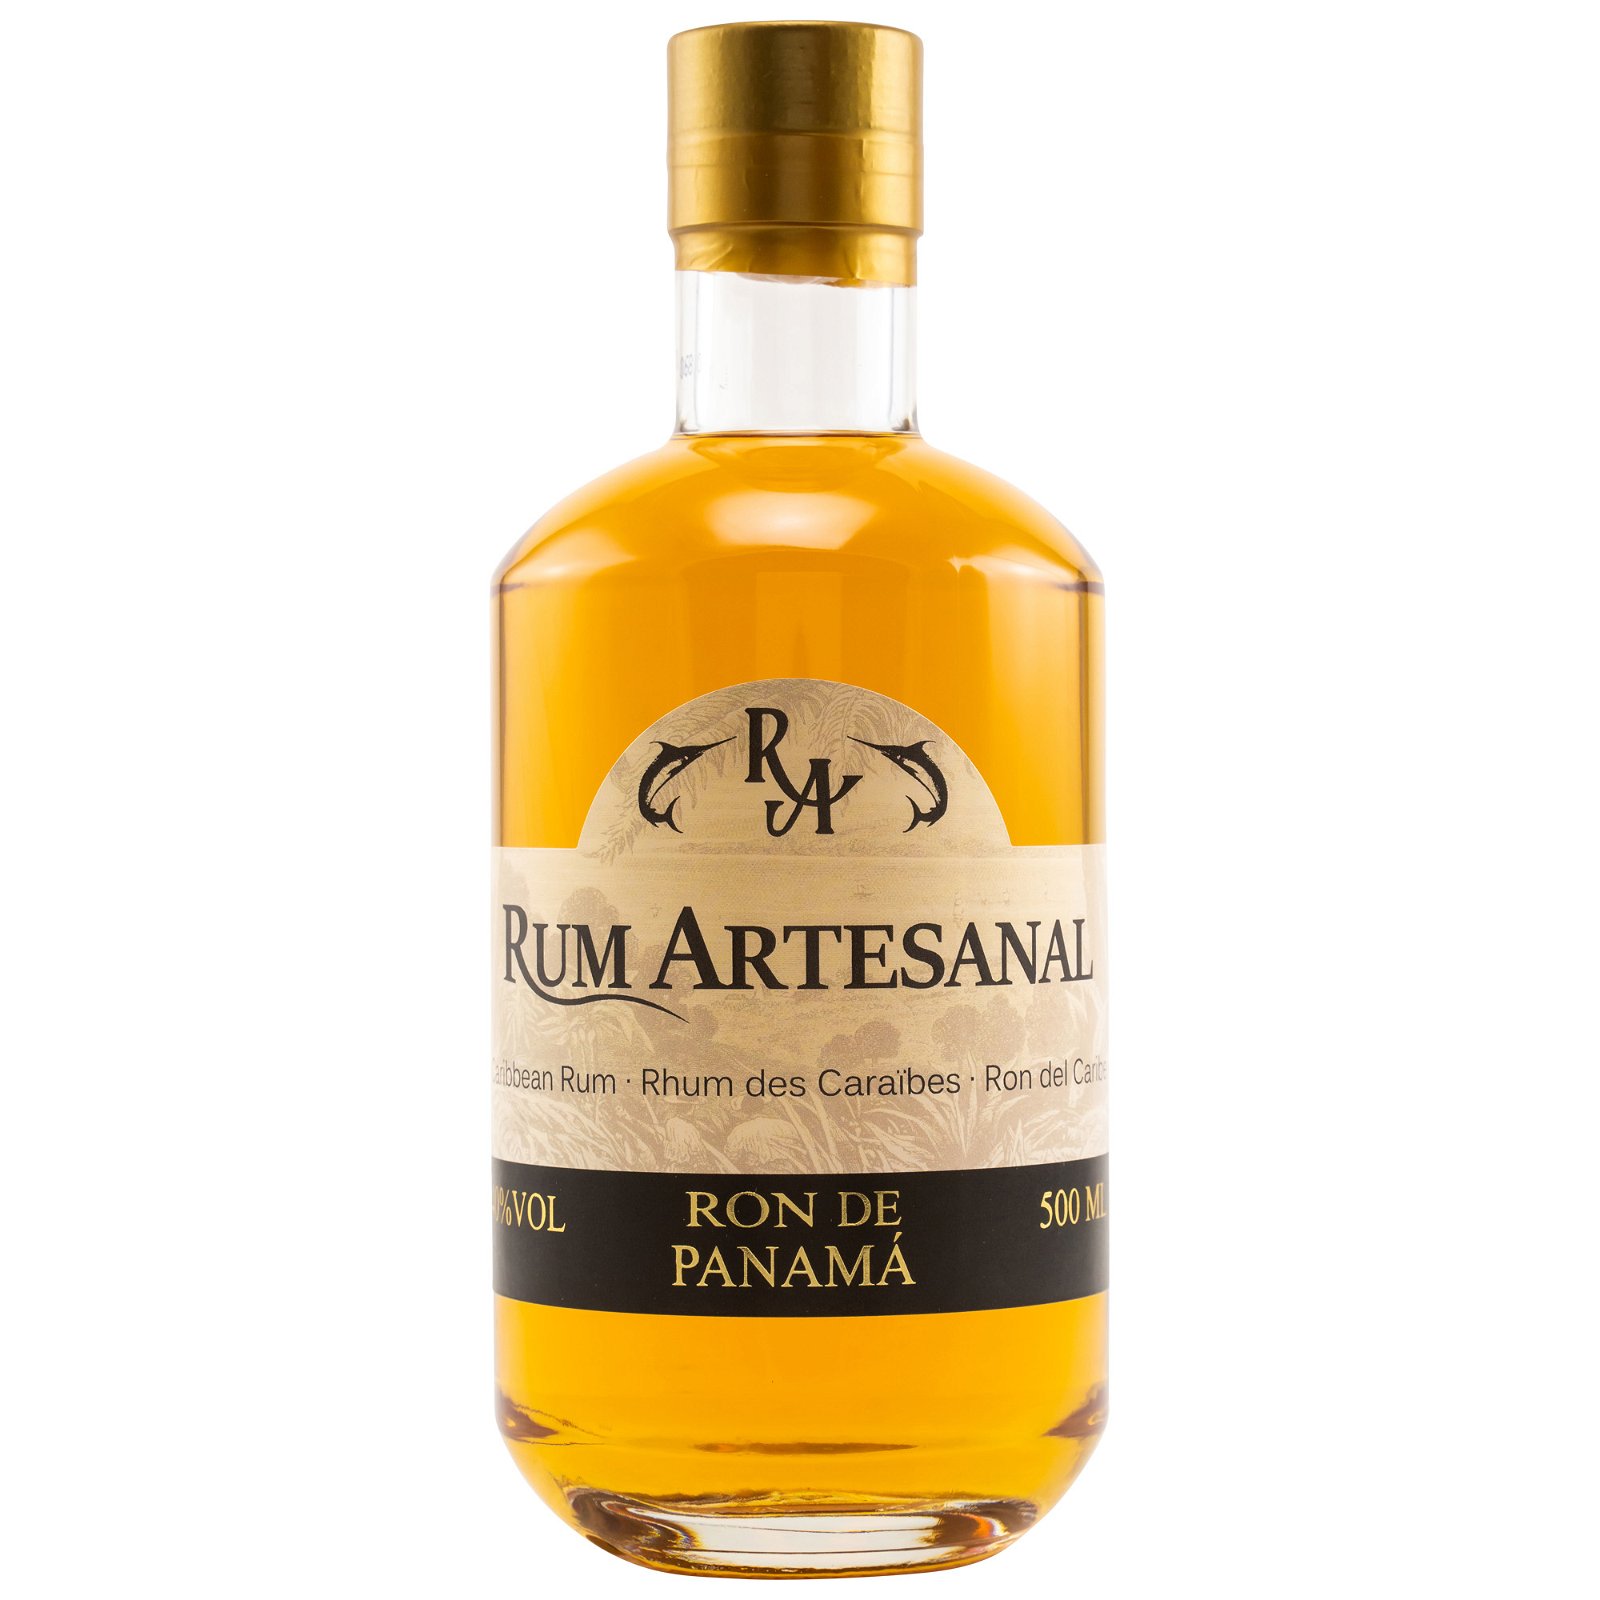 Ron de Panama 3 Jahre (Rum Artesanal)